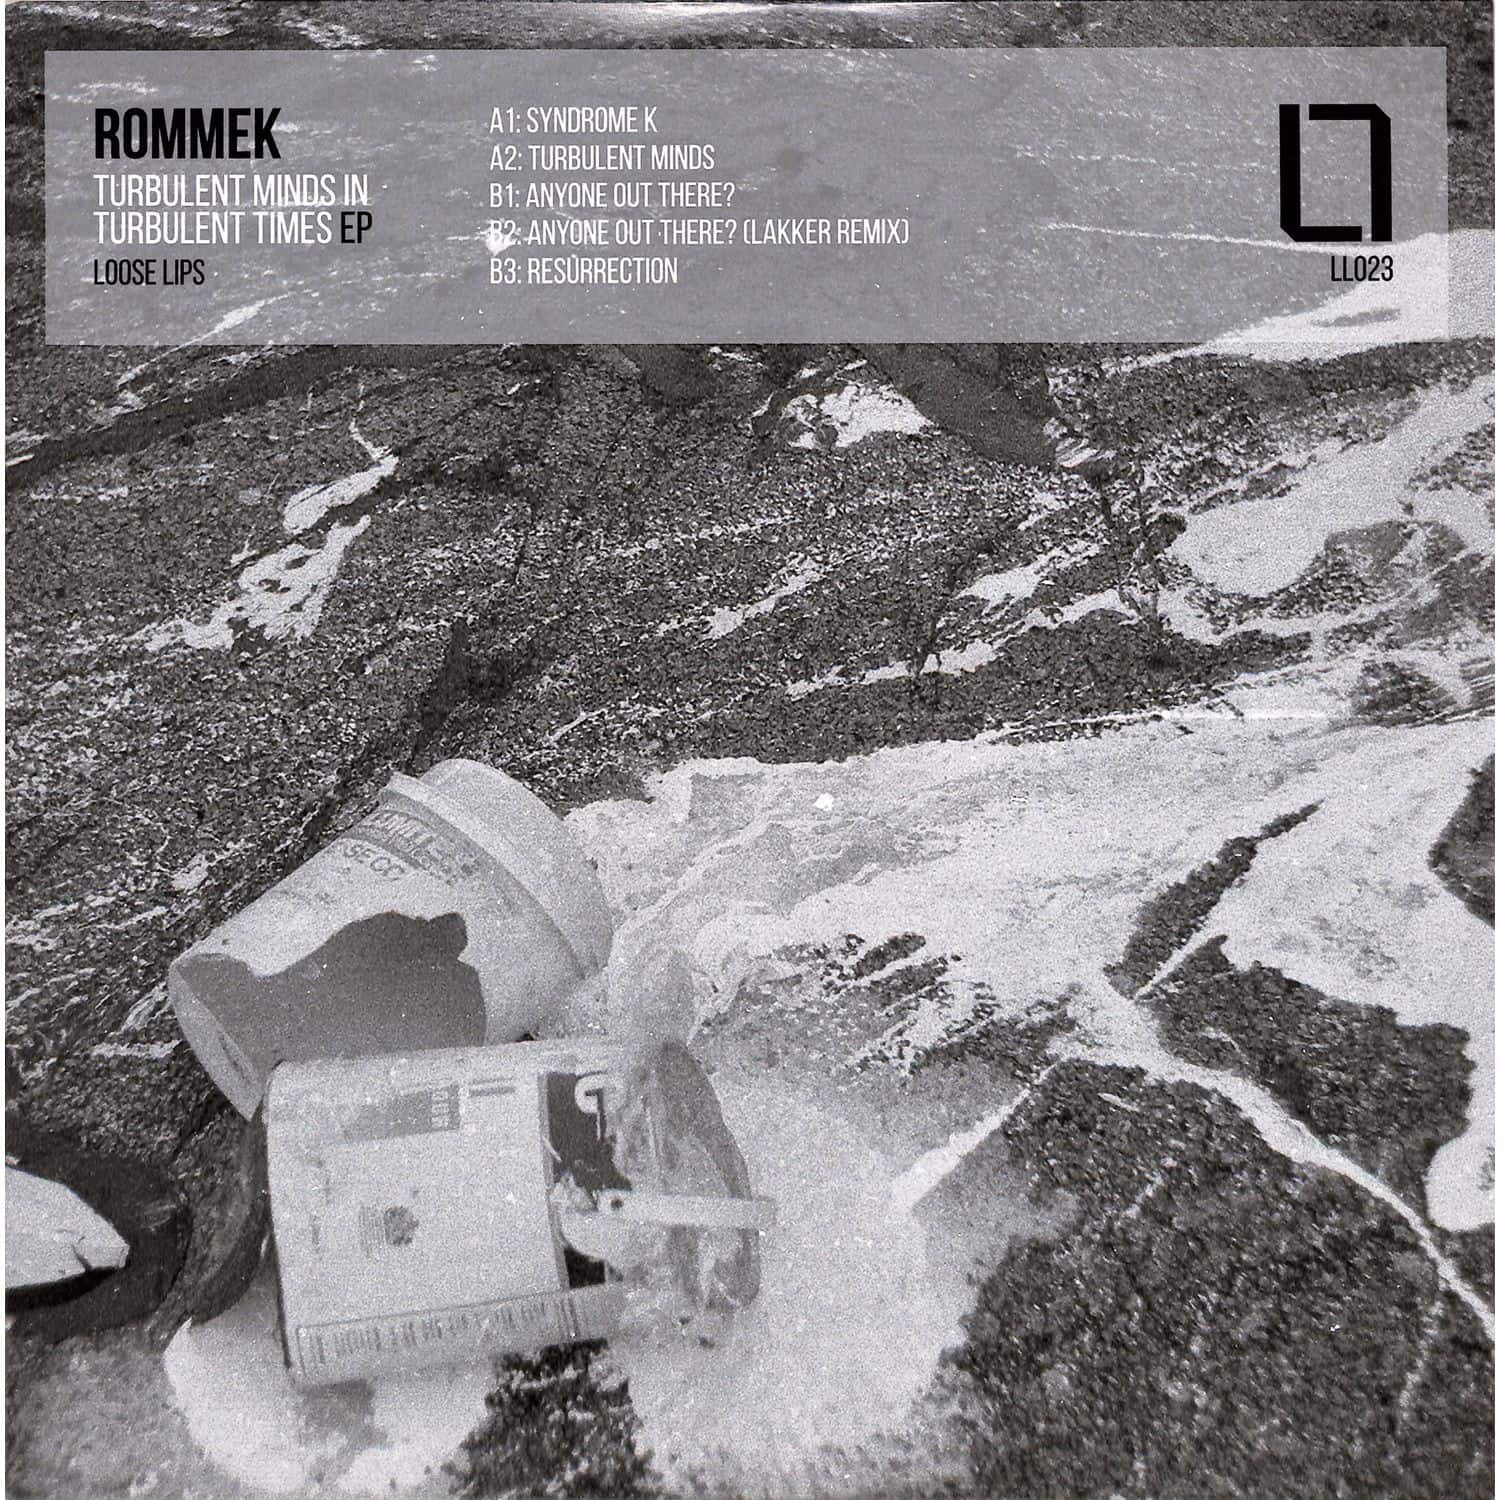 Rommek - TURBULENT MINDS IN TURBULENT TIMES EP